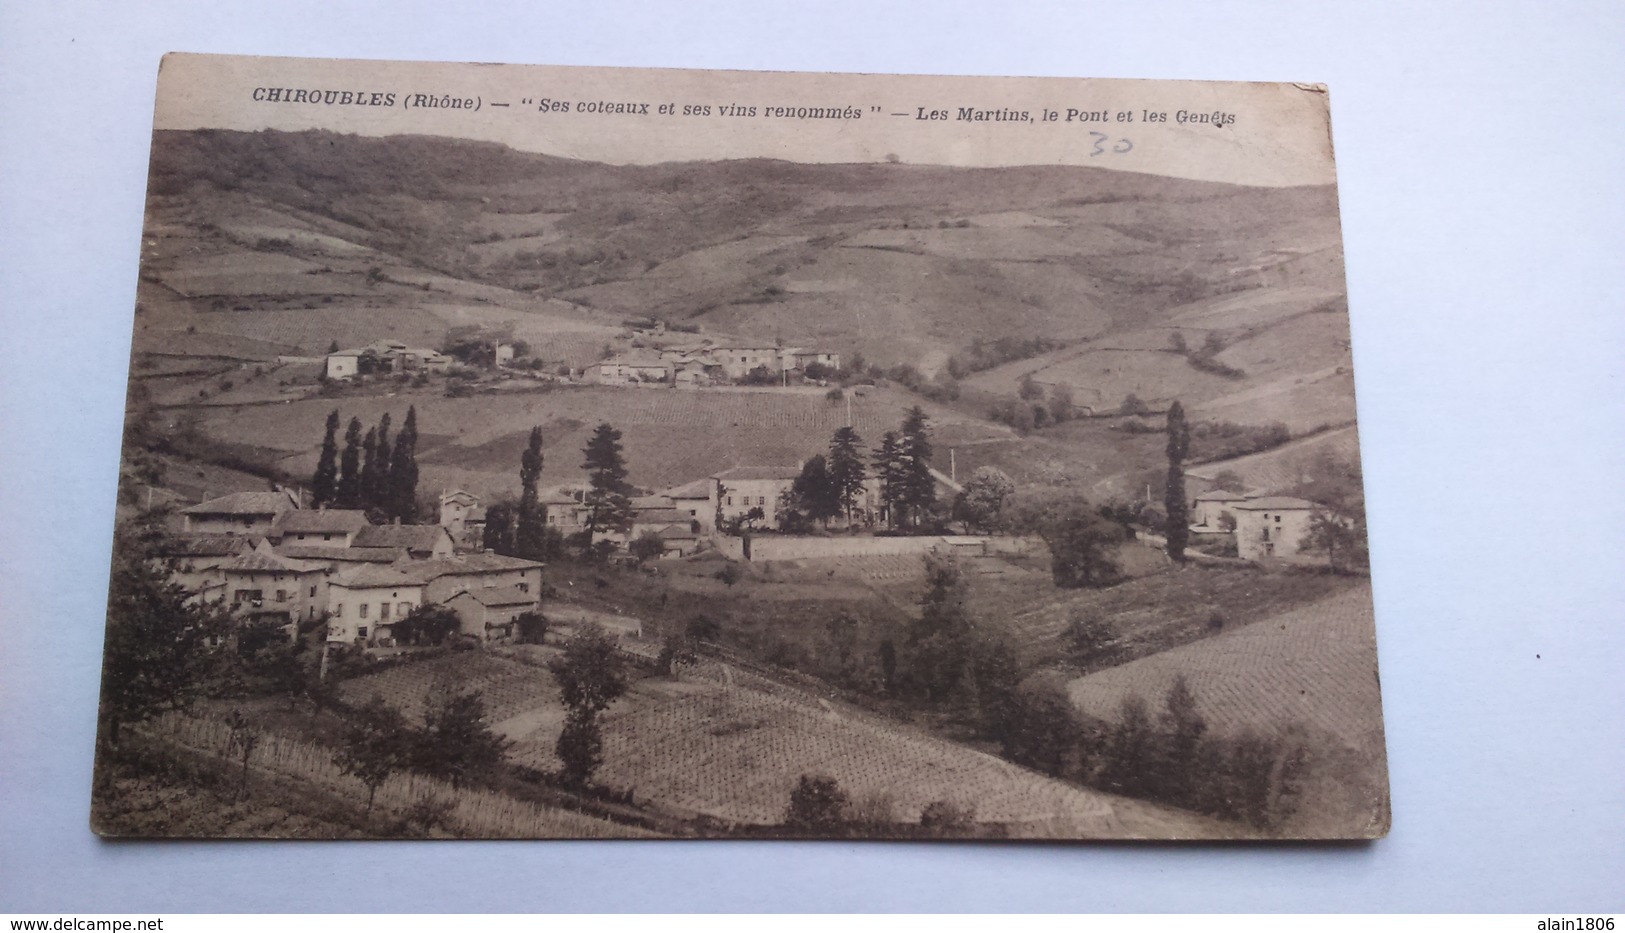 Carte Postale ( R7) Ancienne De Chiroubles ,les Martins Le Pont Et Les Genets - Chiroubles